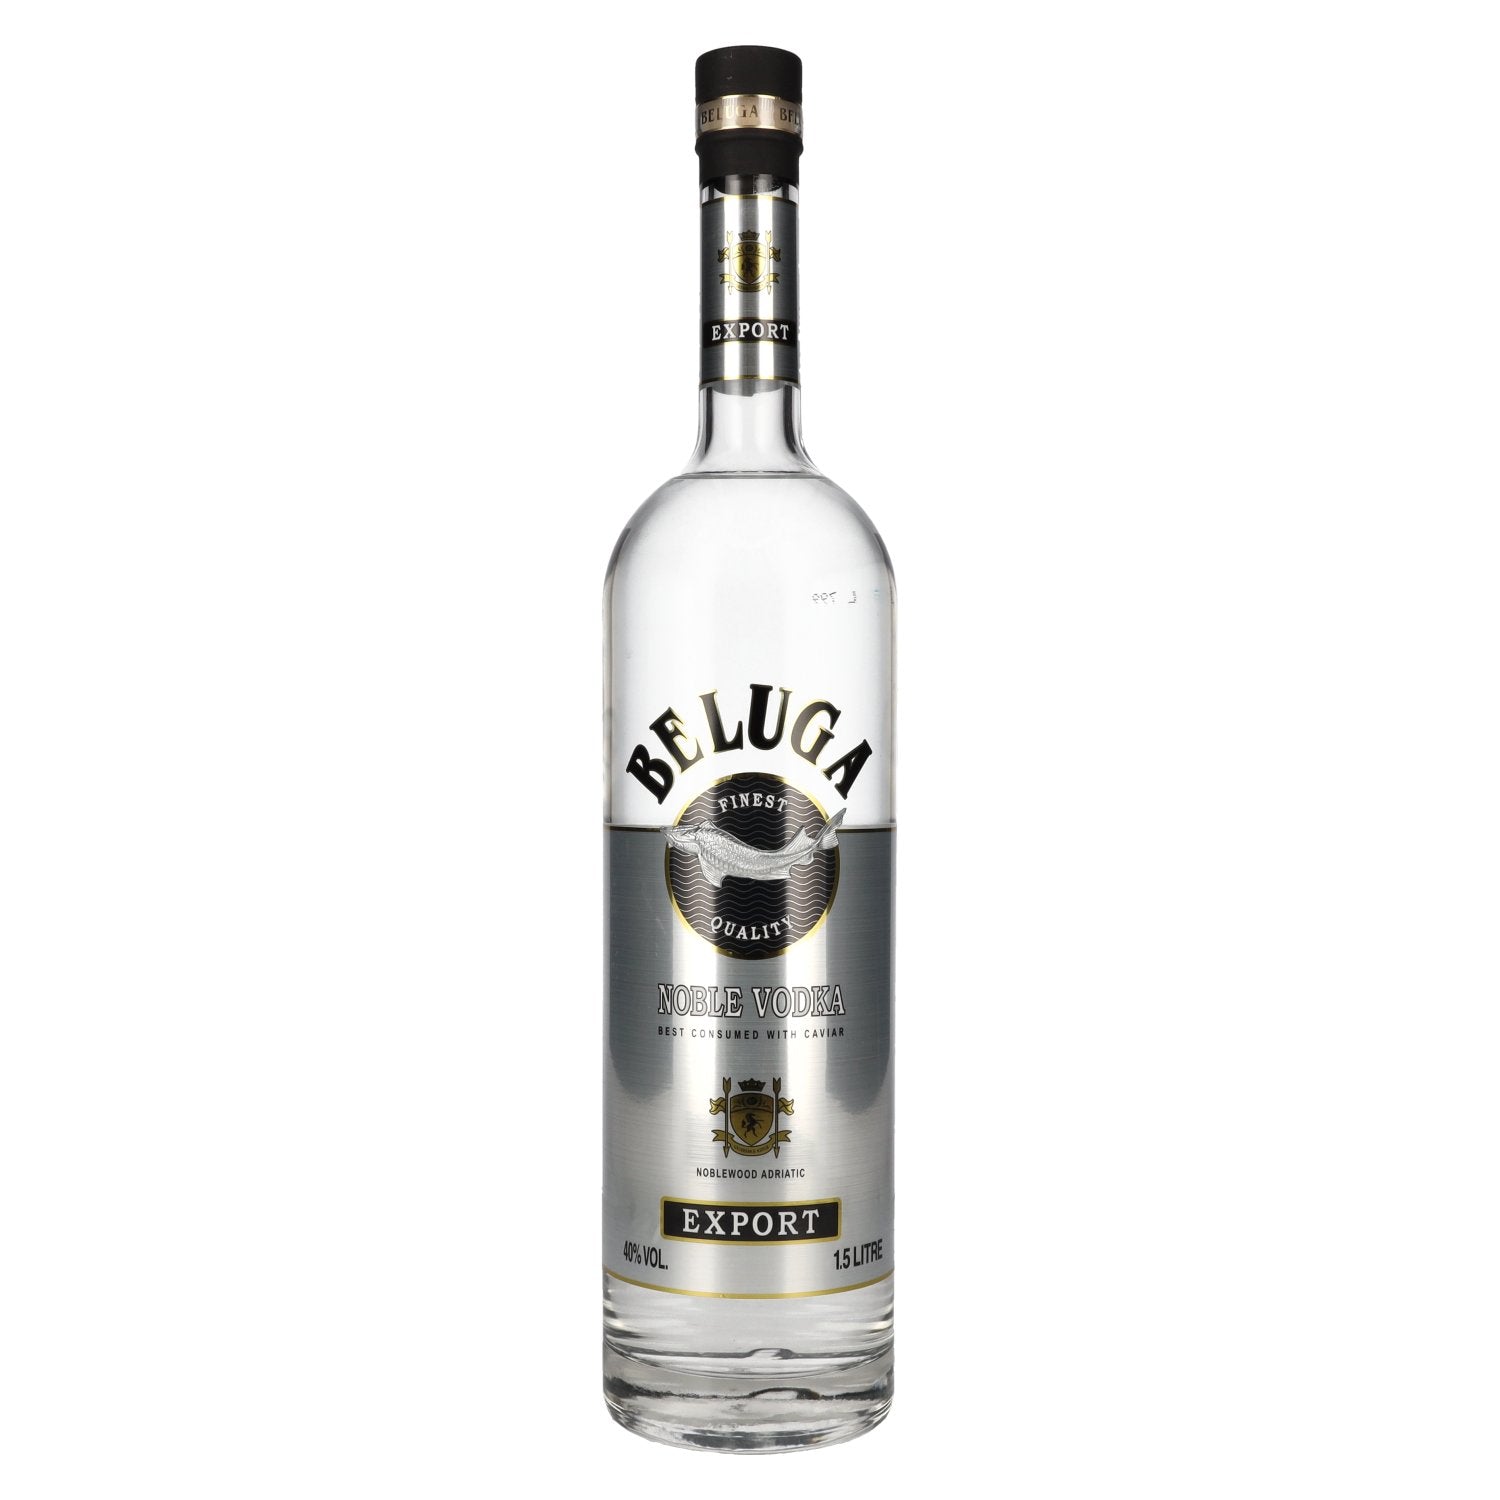 Beluga Noble Vodka EXPORT Montenegro 40% Vol. 1,5l